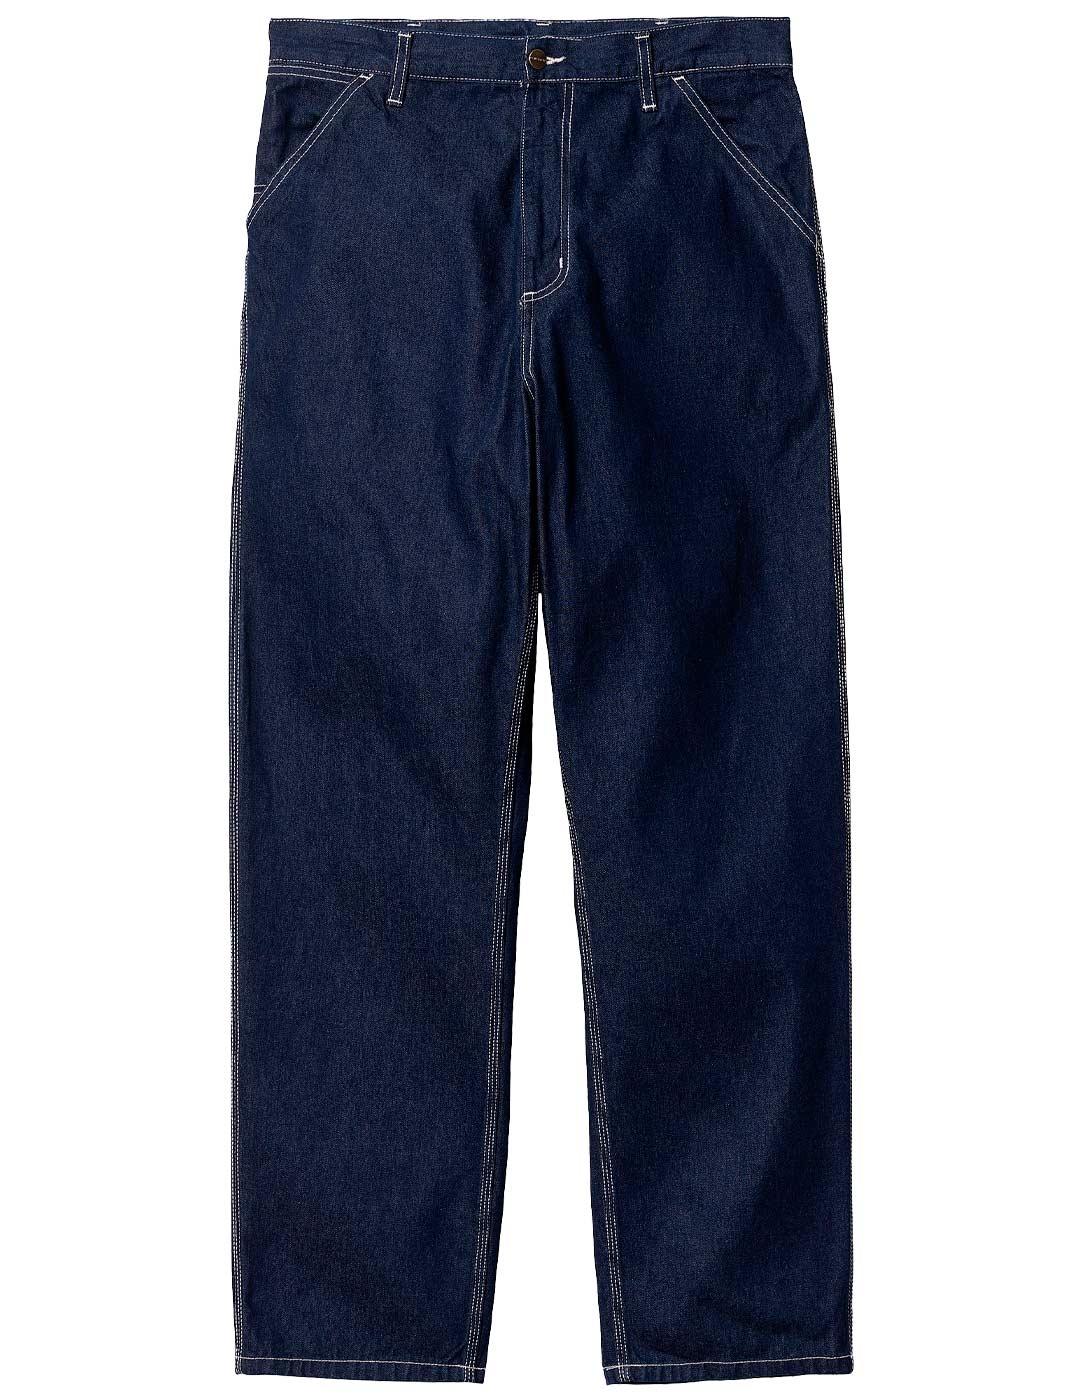 Pantalón Carhartt Wip Simple Pant